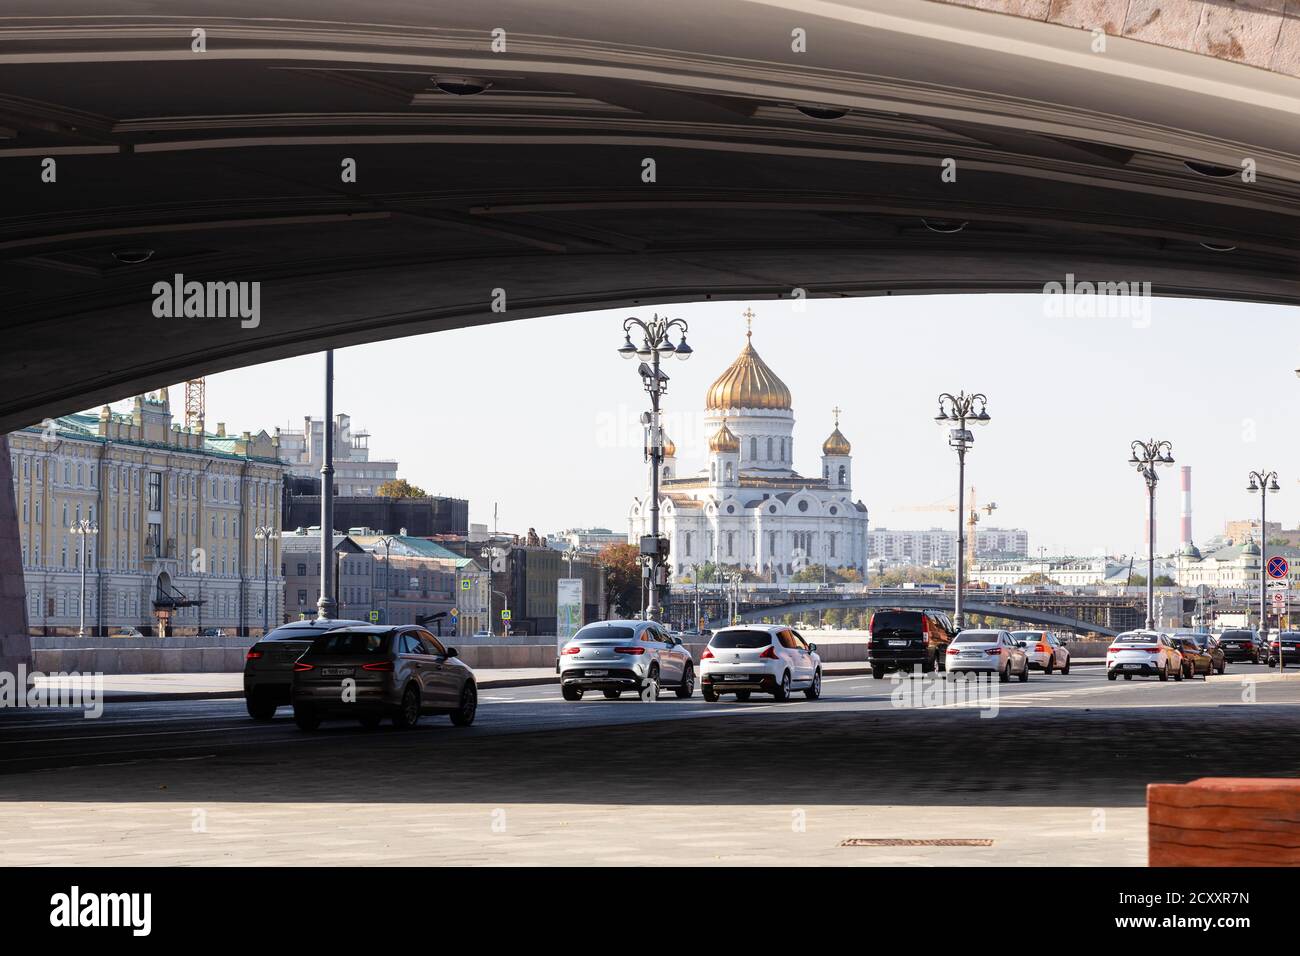 MOSKAU, RUSSLAND - 27. SEPTEMBER 2020: Autoverkehr am Kremlufer unter der Bolschoj Moskworetski Brücke und Blick auf die Kathedrale Christi des Erlösers i. Stockfoto